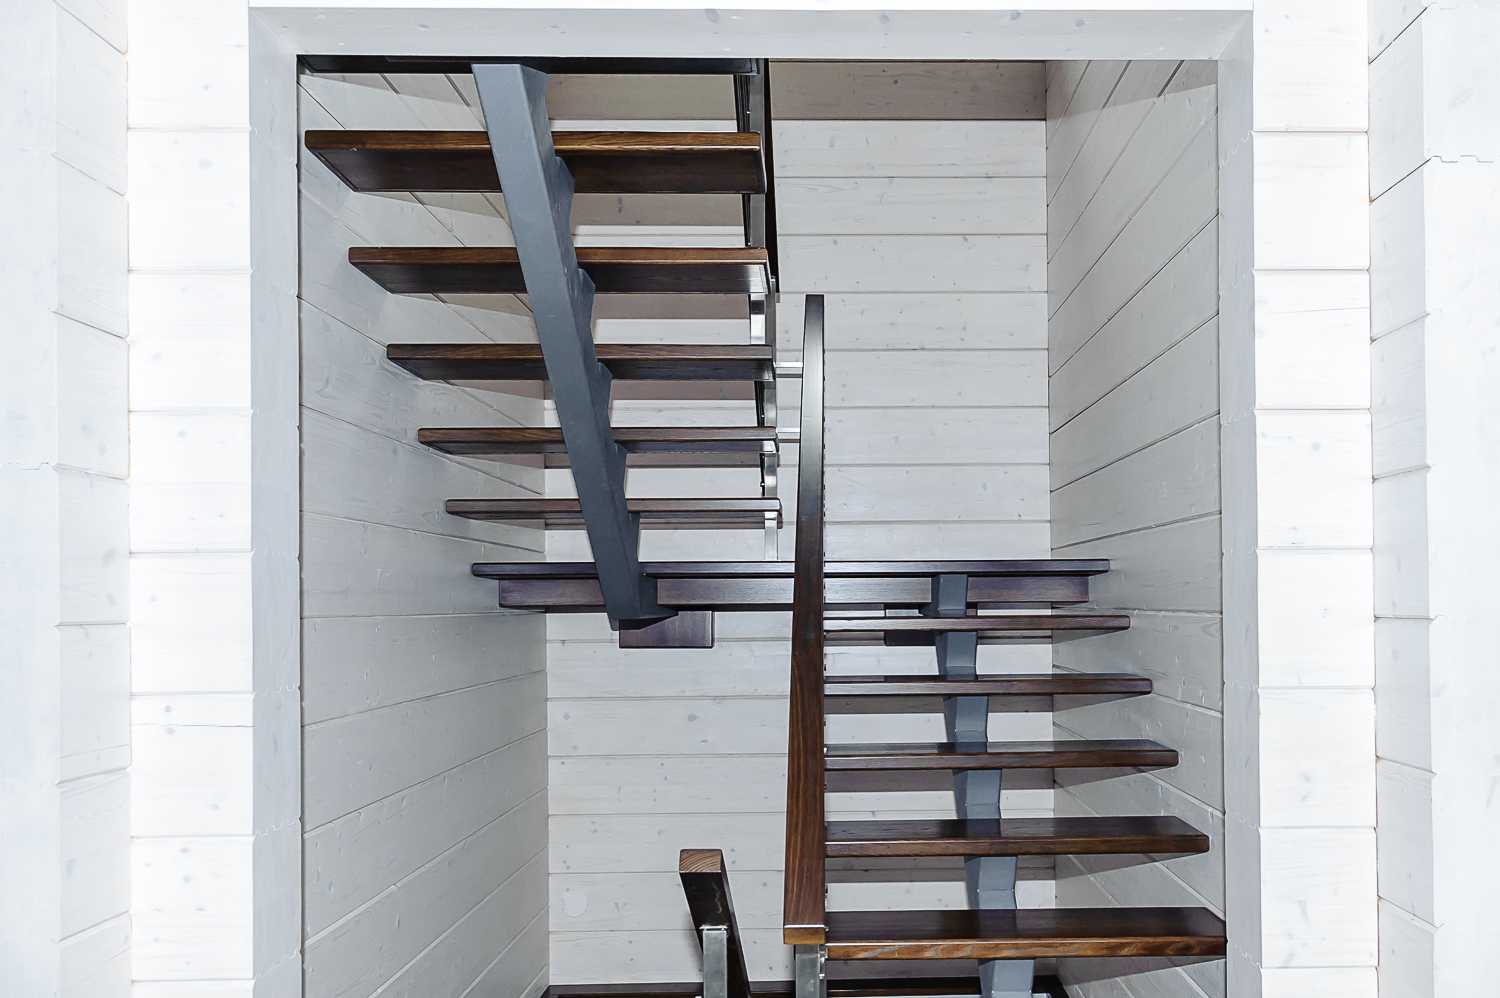 Особенности изготовления деревянной лестницы на косоурах для дома